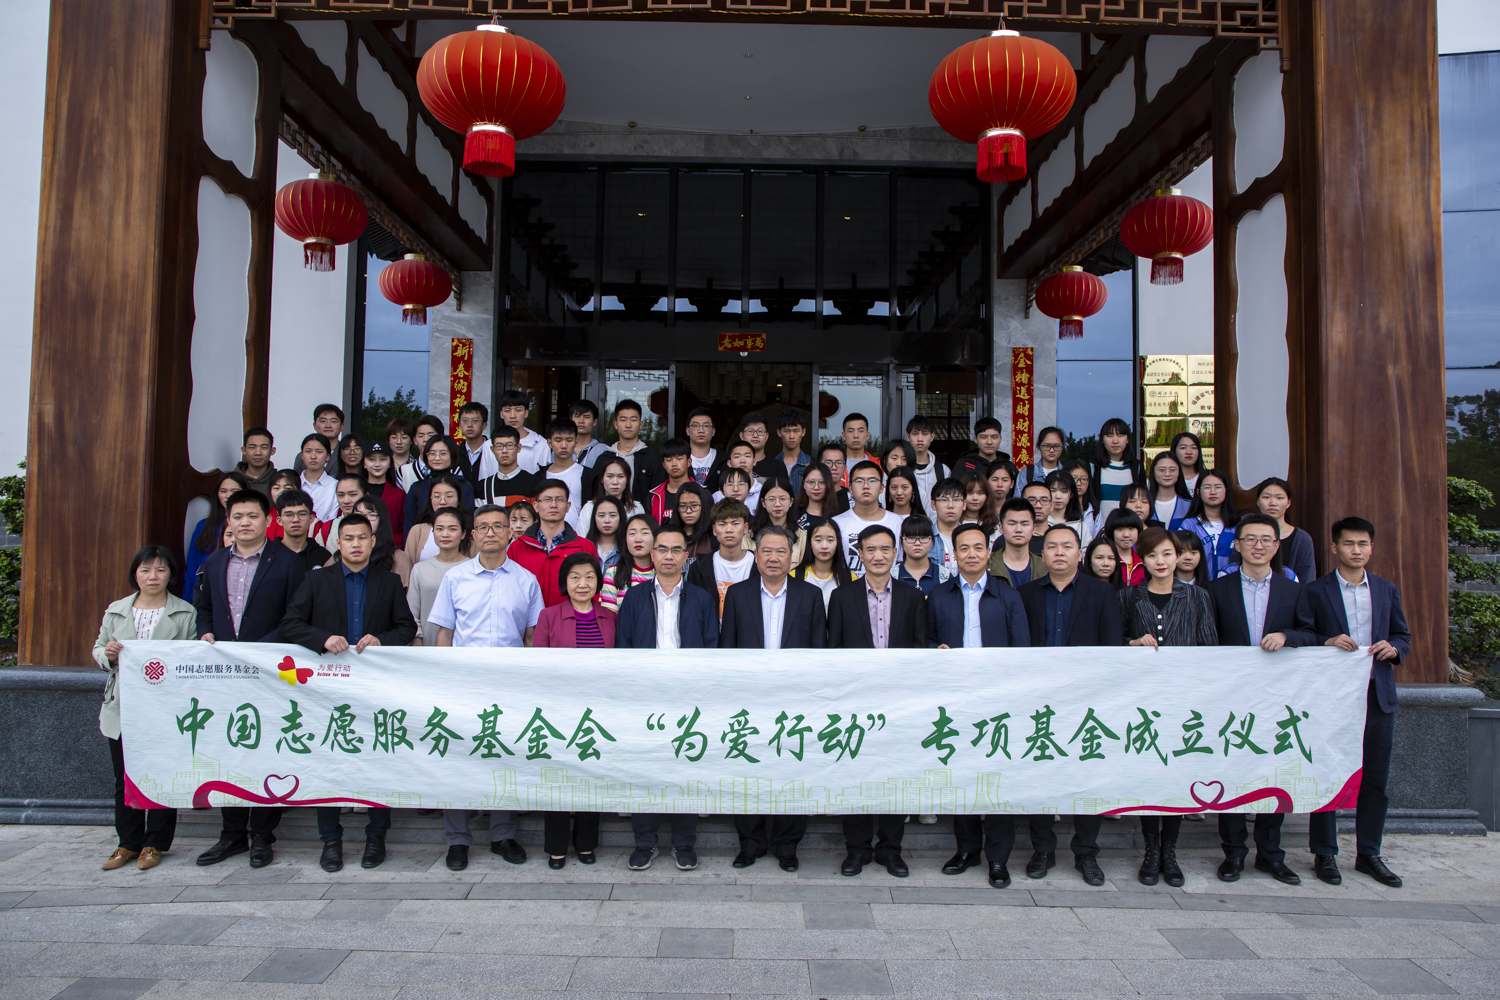 中国志愿服务基金会 “为爱行动”专项基金在福州成立